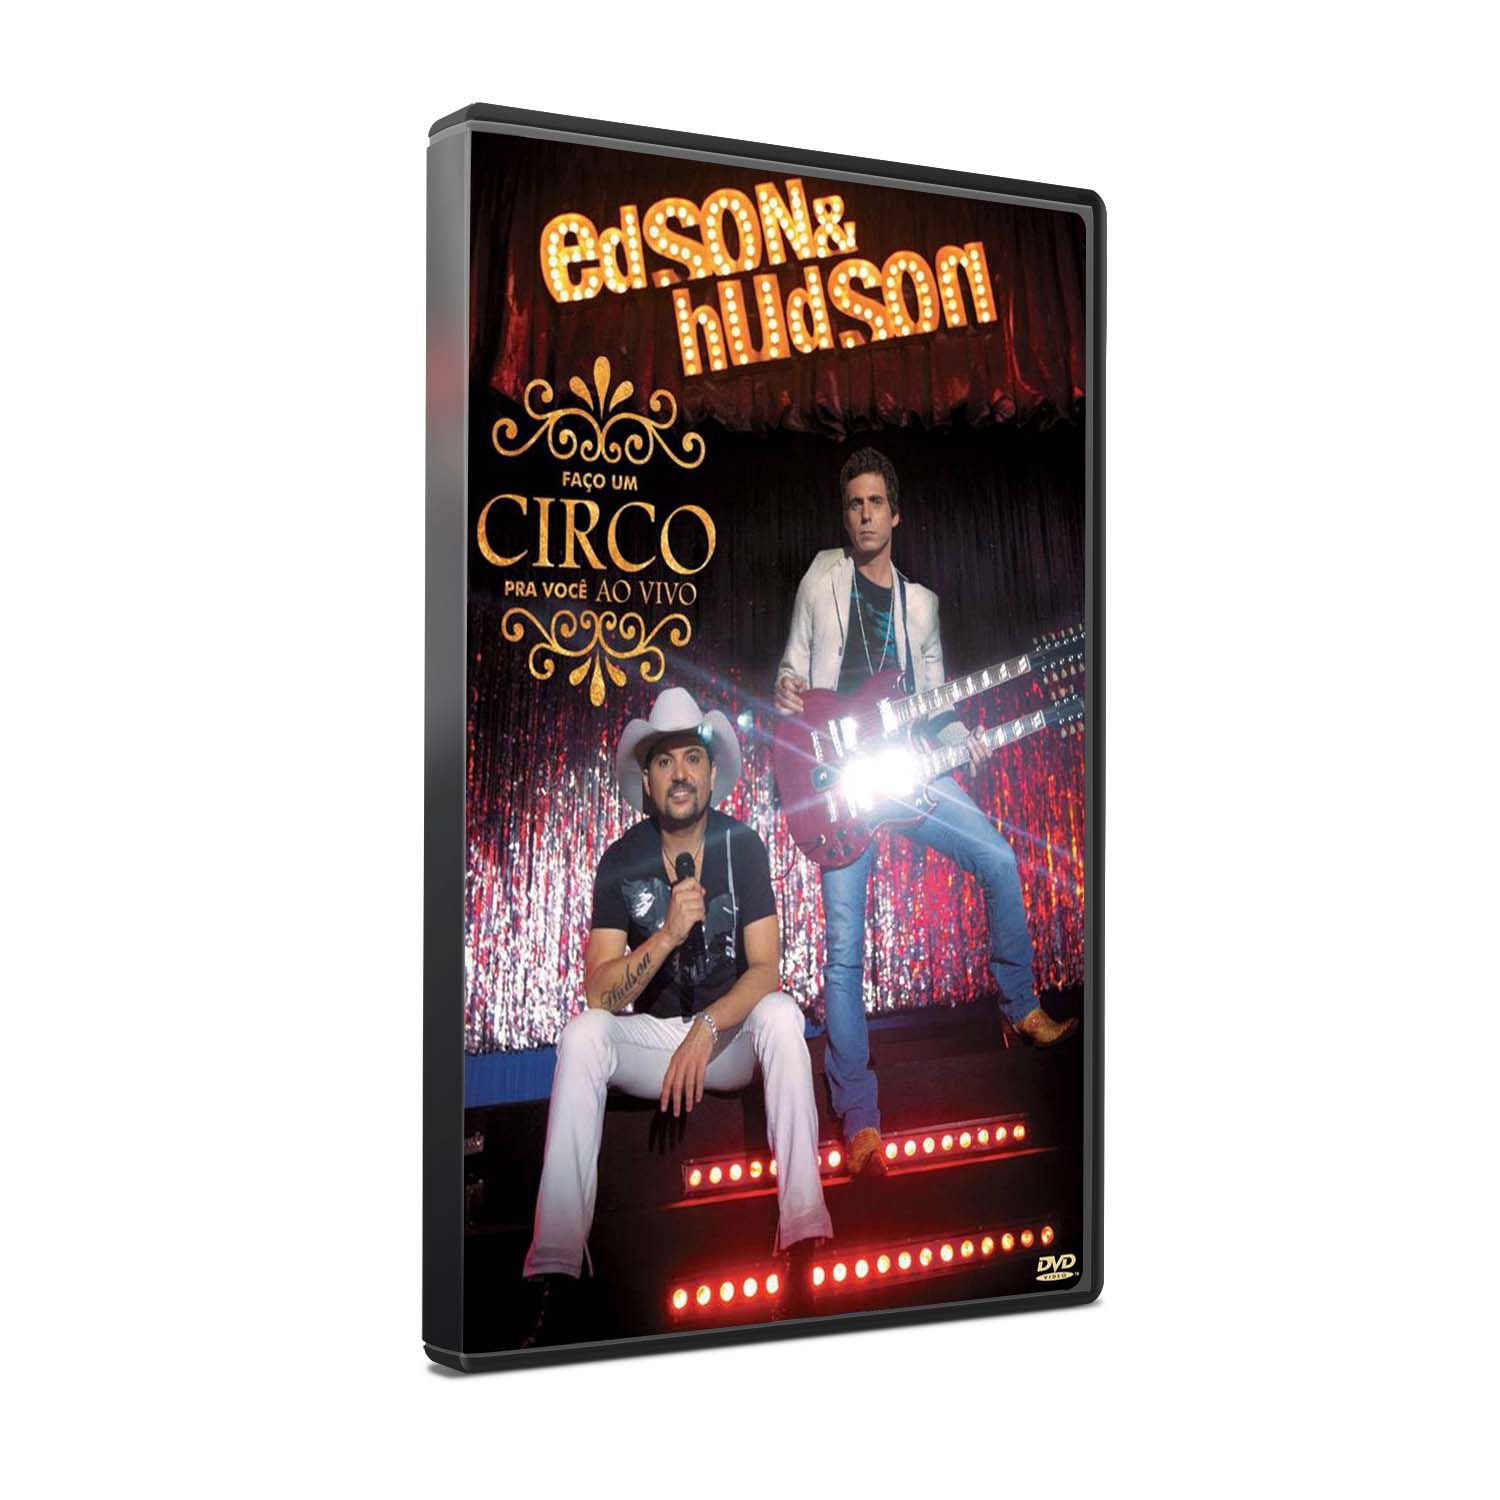 KIT DVD+CD EDSON & HUDSON - FAÇO UM CIRCO PRA VOCÊ